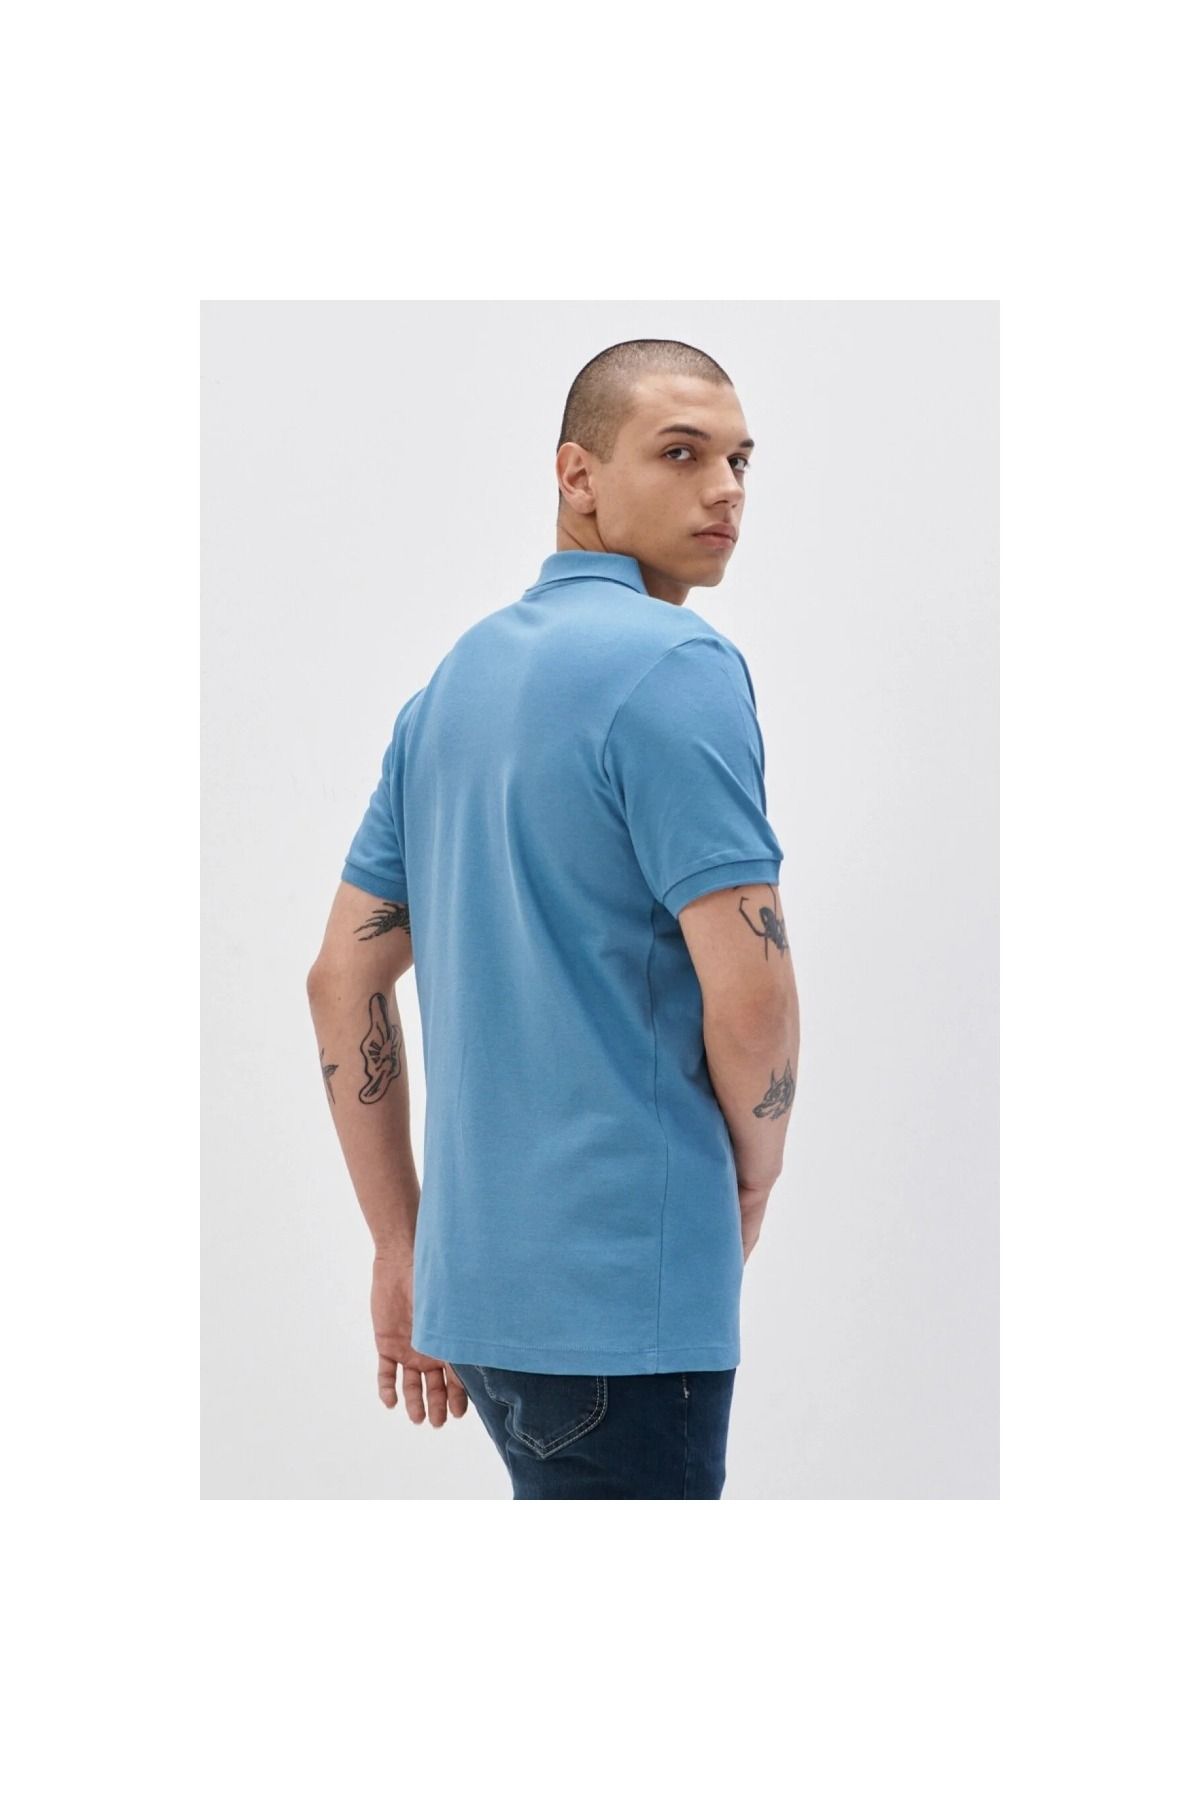 Lee شرت آبی مردانه